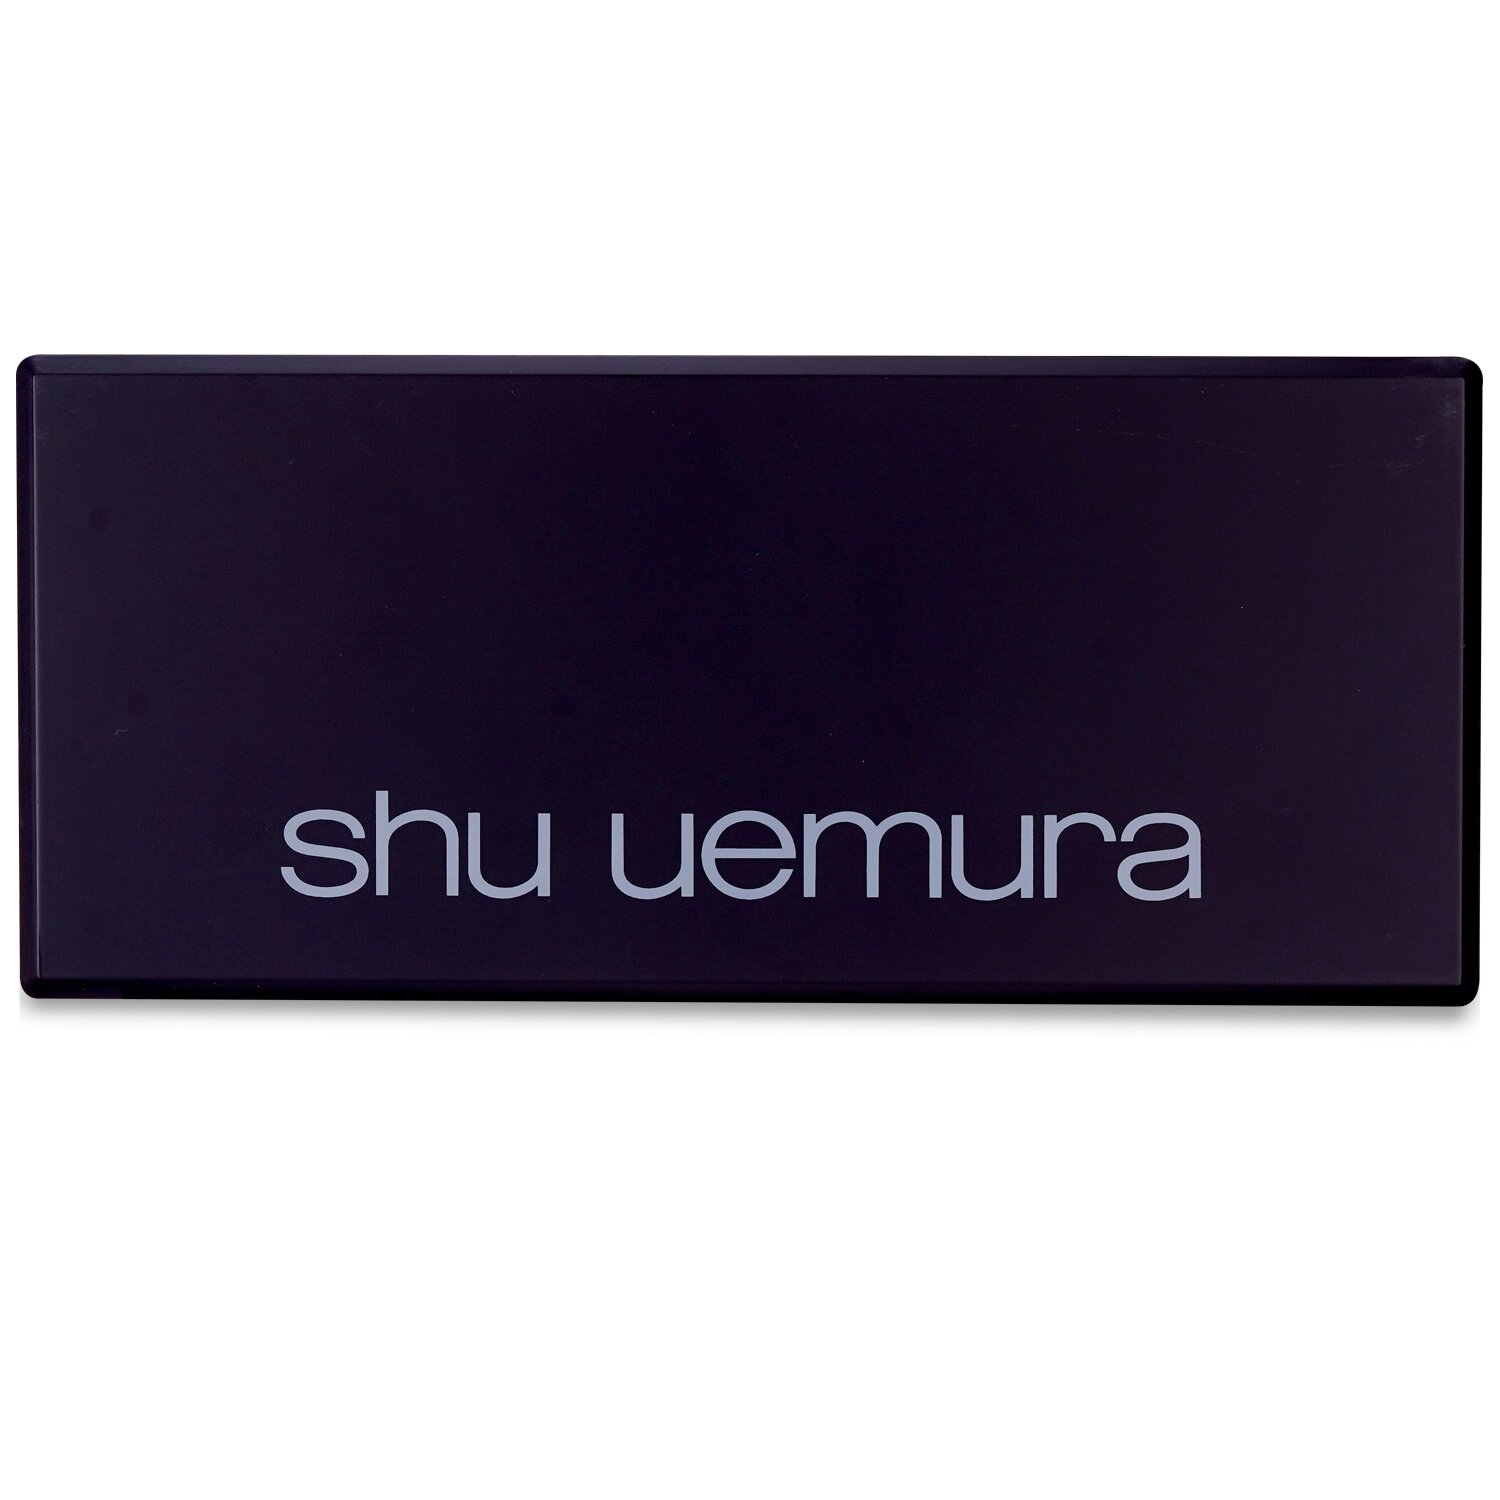 Shu Uemura Shu:Palette (16x Pressed Eye Shadow) 16x1.4g/0.049oz